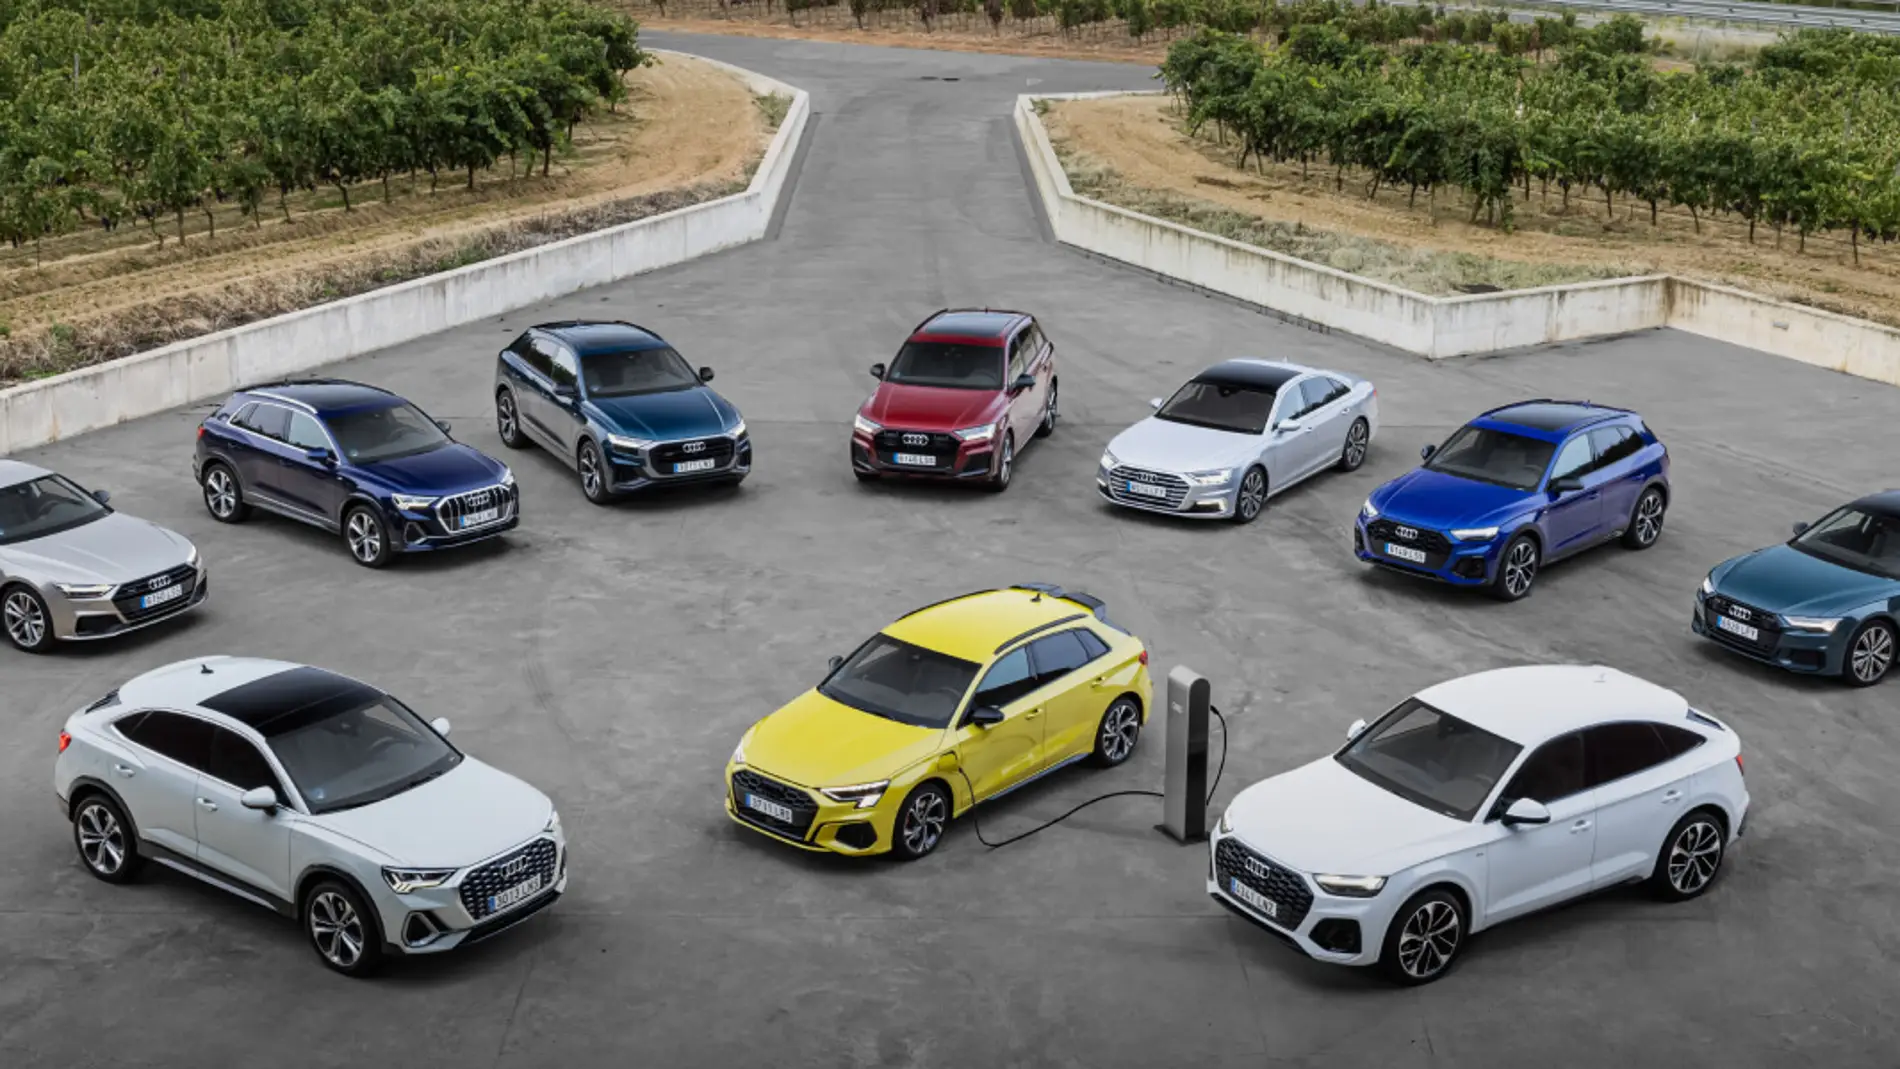 La apuesta de Audi por los híbridos enchufables va muy en serio: estos son los 8 modelos de su gama TFSIe